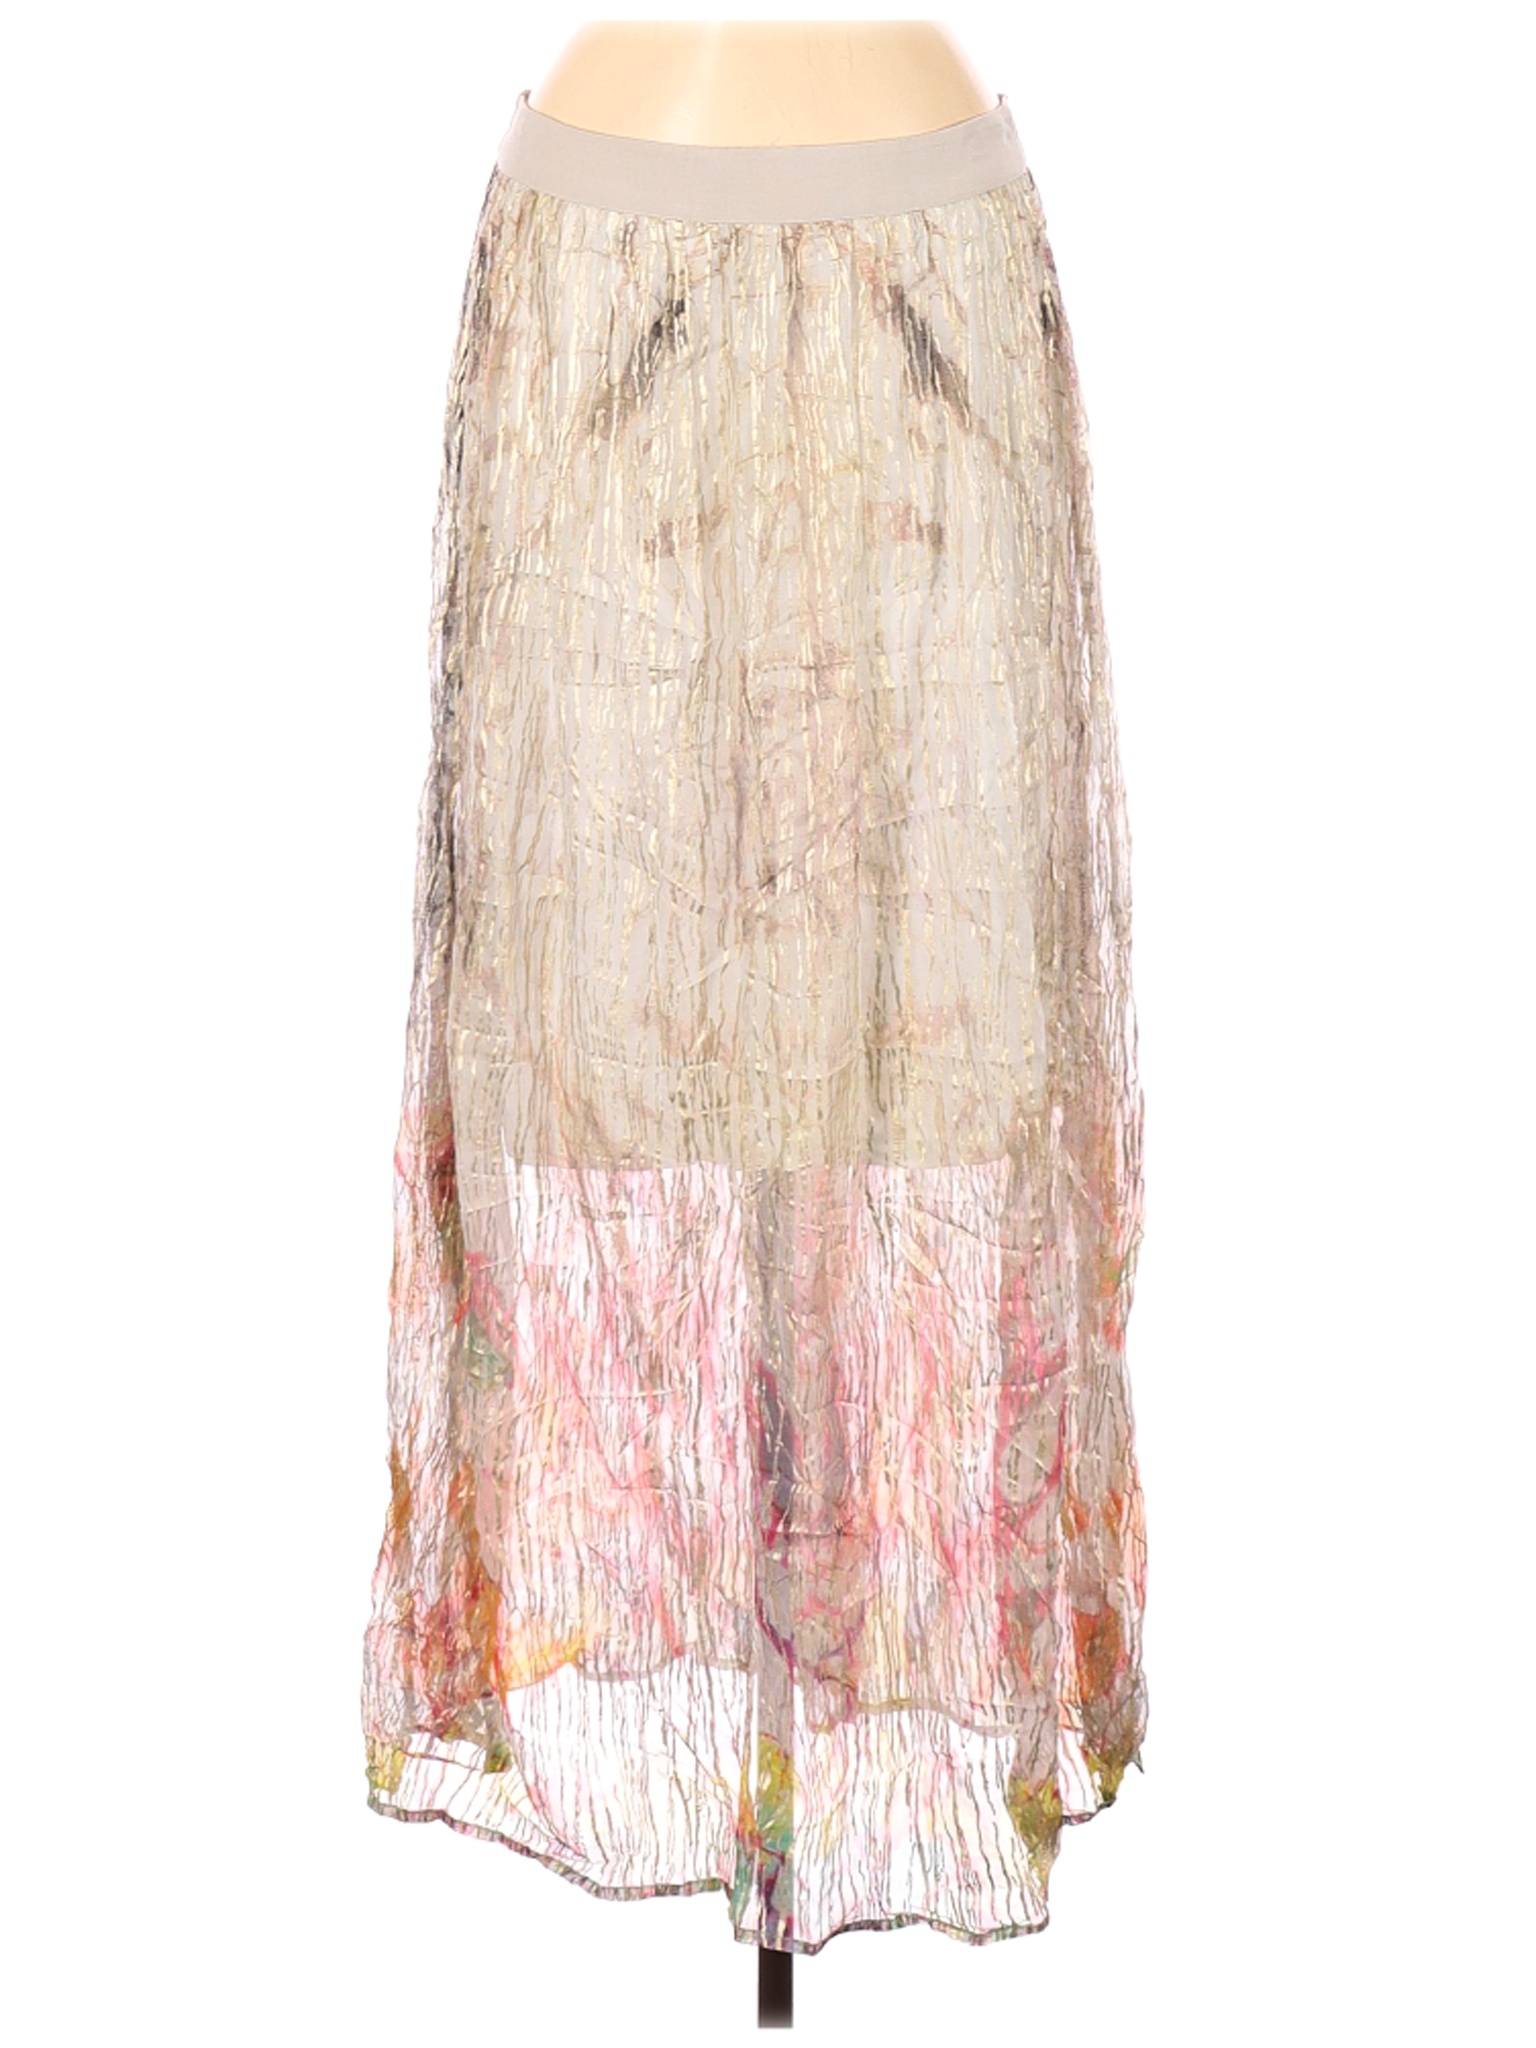 Blink Women Ivory Casual Skirt M | eBay